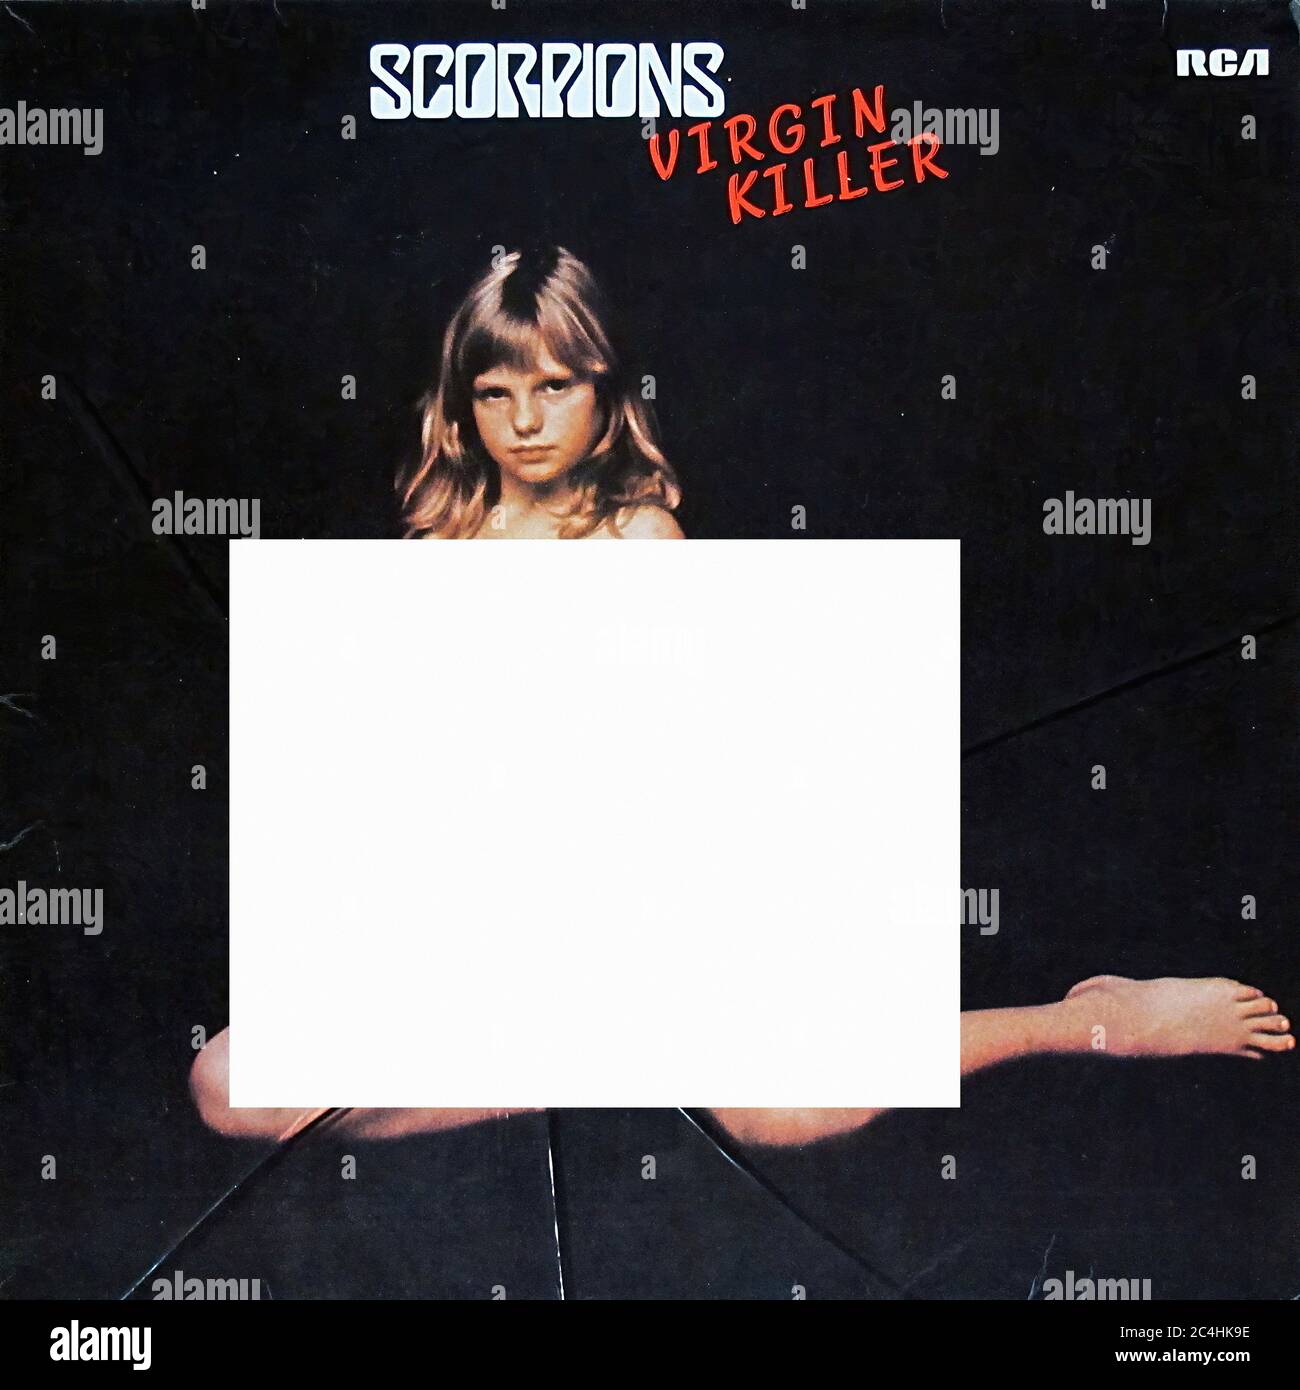 Scorpions Virgin Killer Unzensiert Erste Deutsche Pressung 12'' Lp Vinyl - Vintage Record Cover 01 Stockfoto